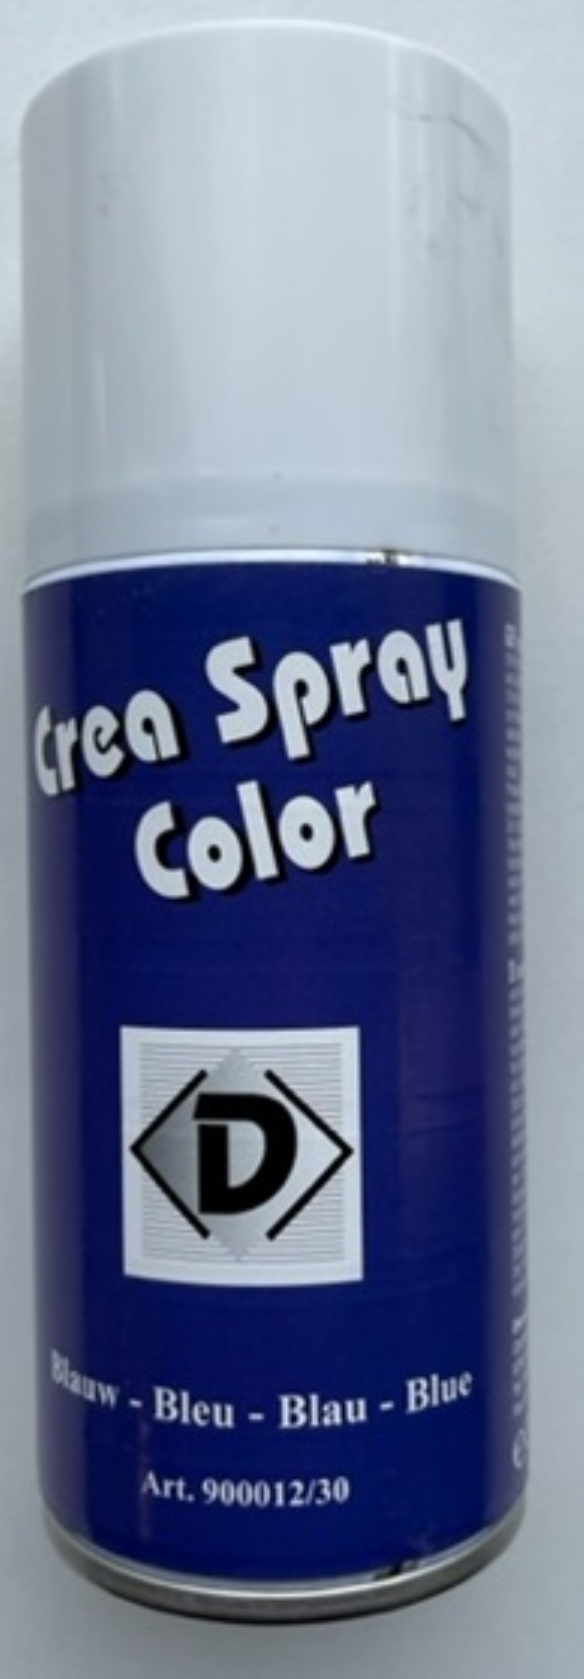 OUTLET Crea spray color, 150 ml, blauw kopen?